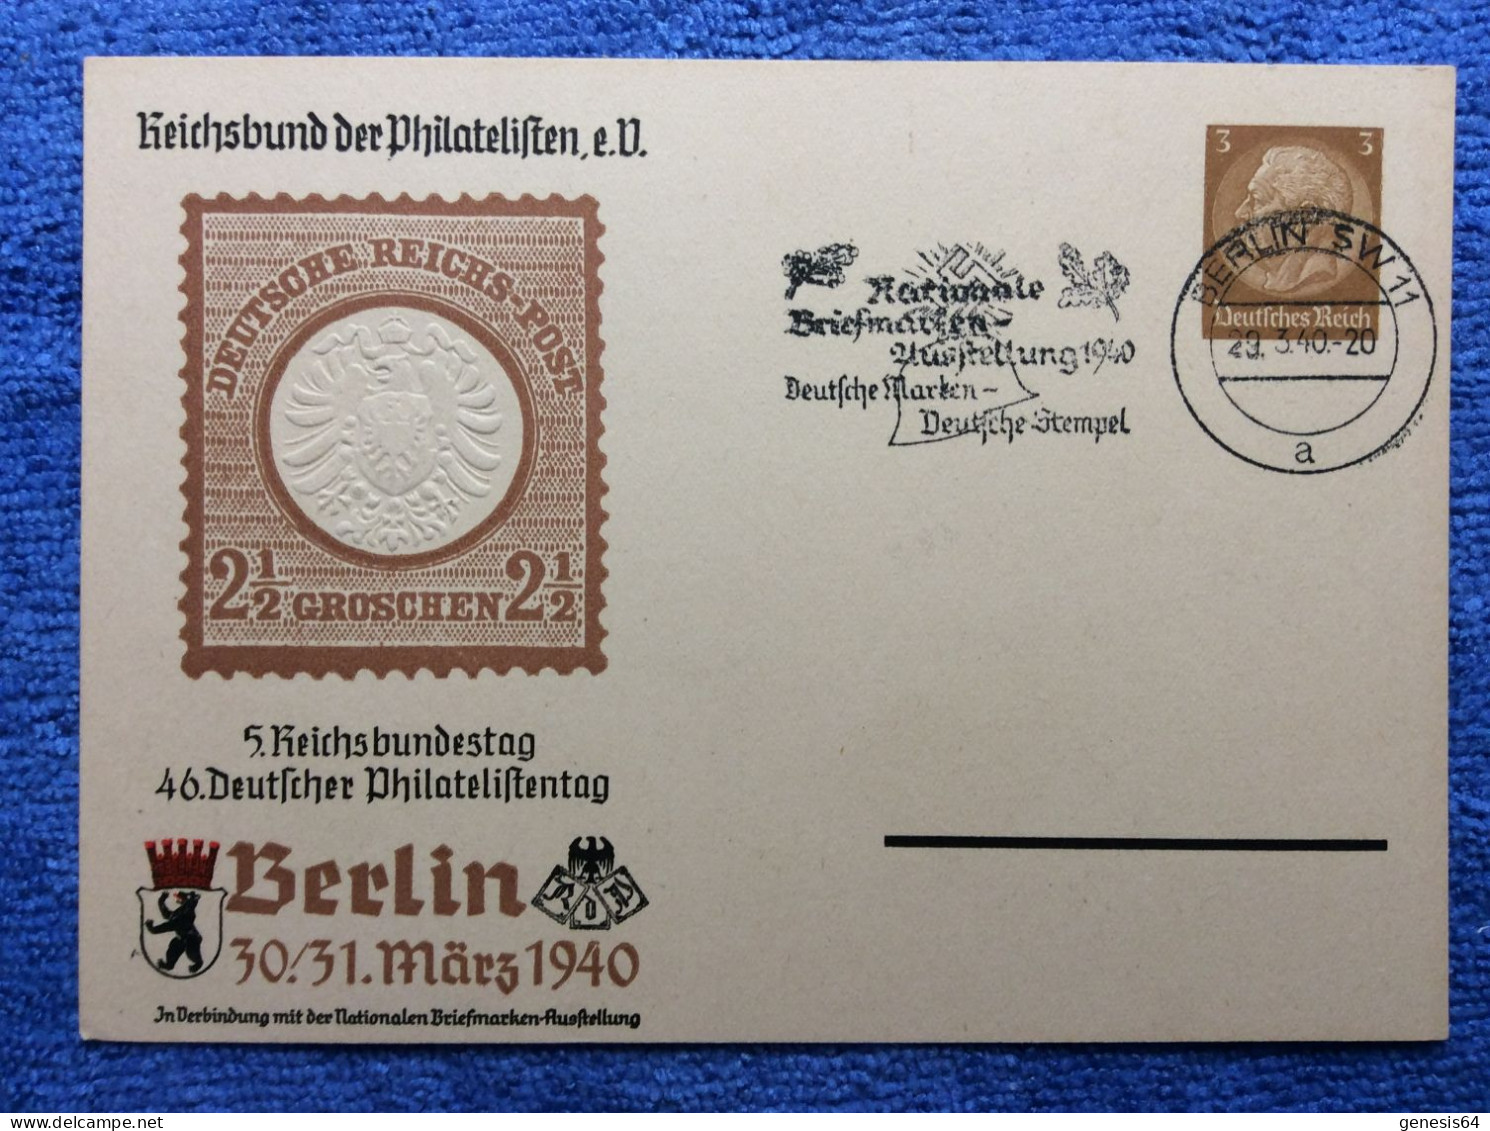 DR - PP122 C110/01 - SST "Berlin SW 11 Nationale Briefmarken-Ausstellung" (Maschinen) (1ZKPVT045) - Enteros Postales Privados